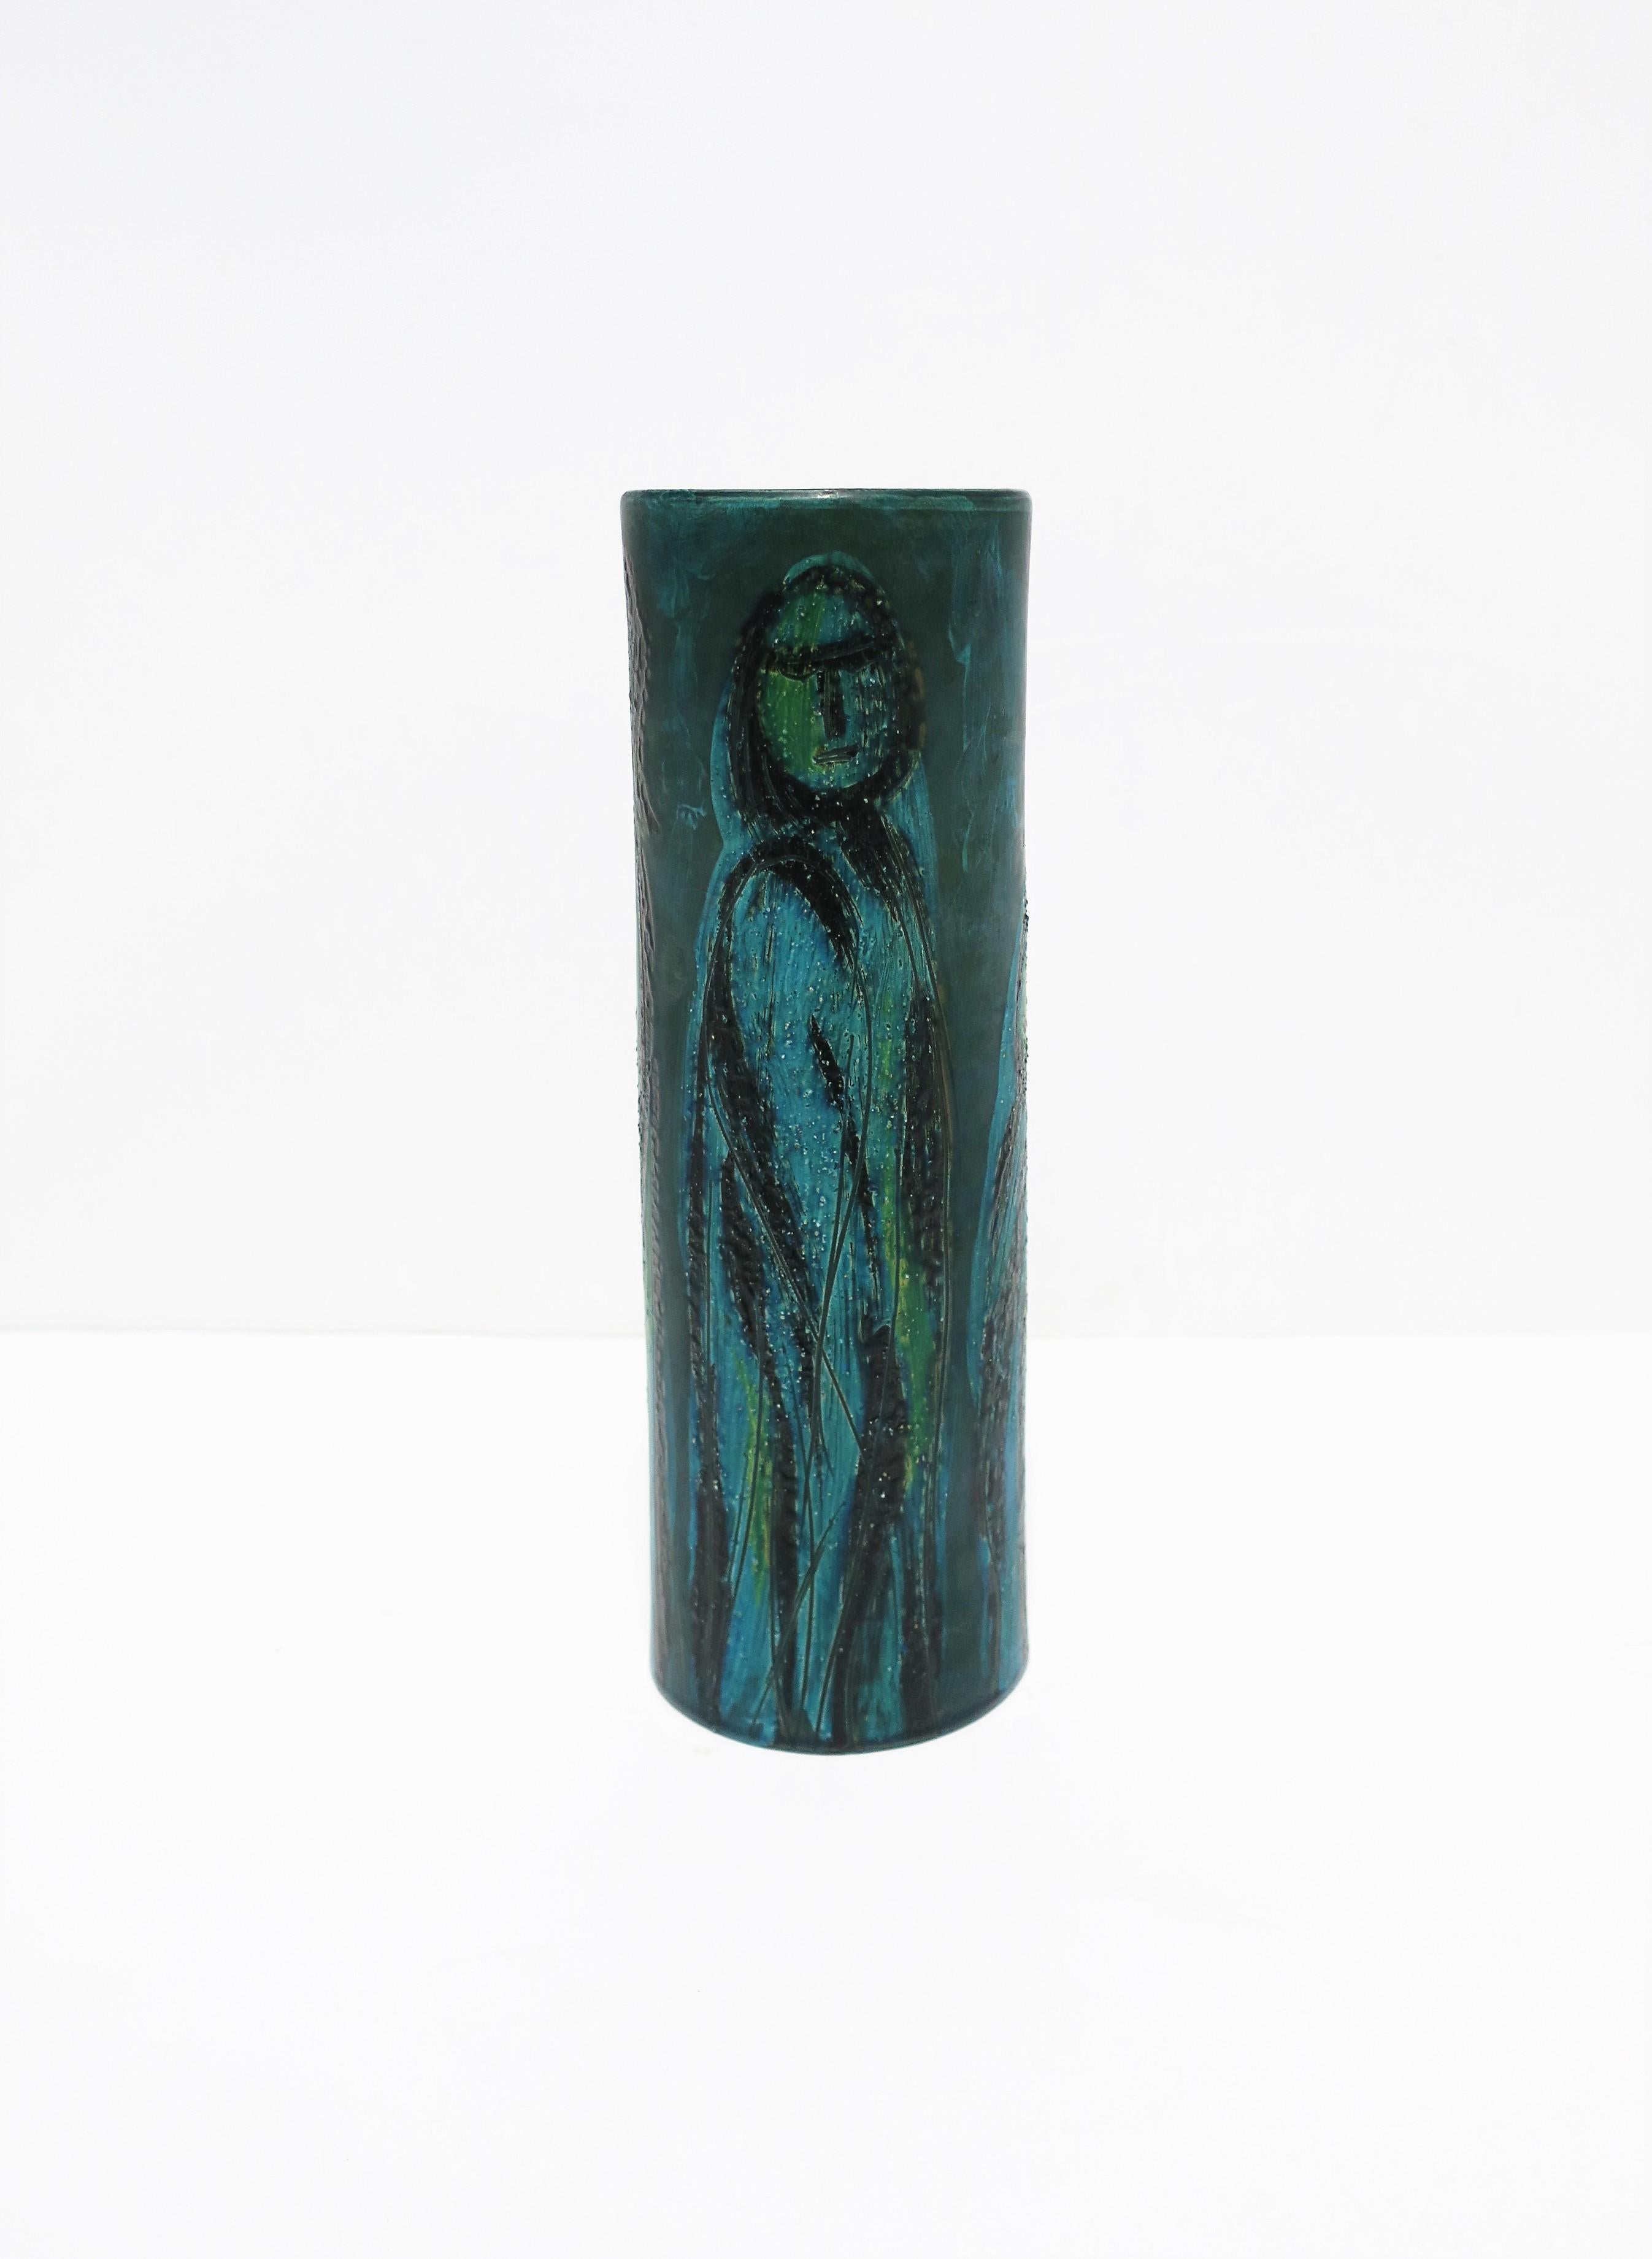 Terracotta Italian Blue Pottery Vase with Figurative Design Bitossi, circa 20th Century For Sale